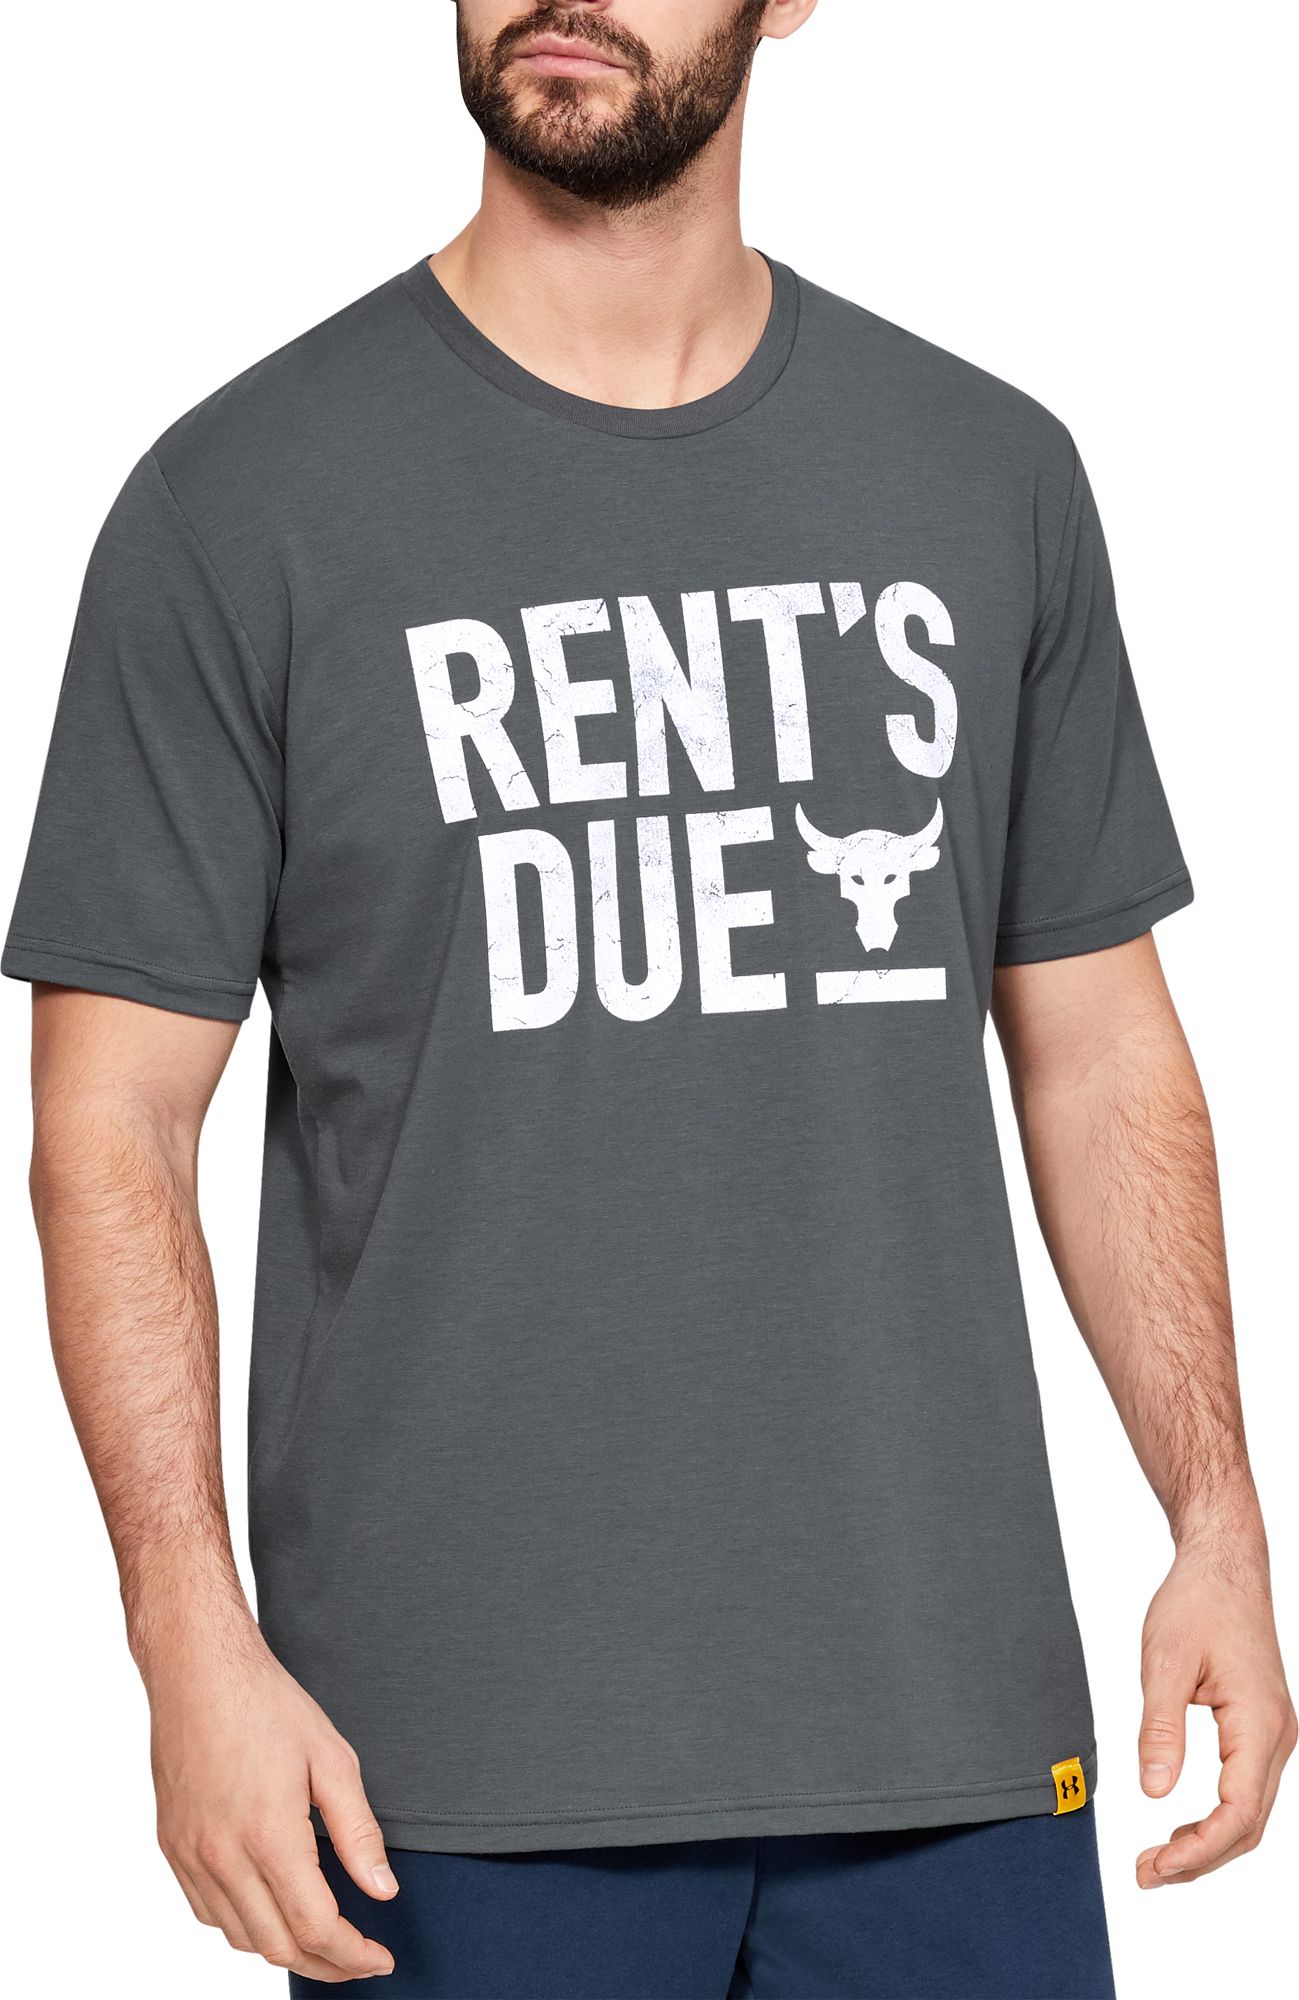 rock rents due shirt